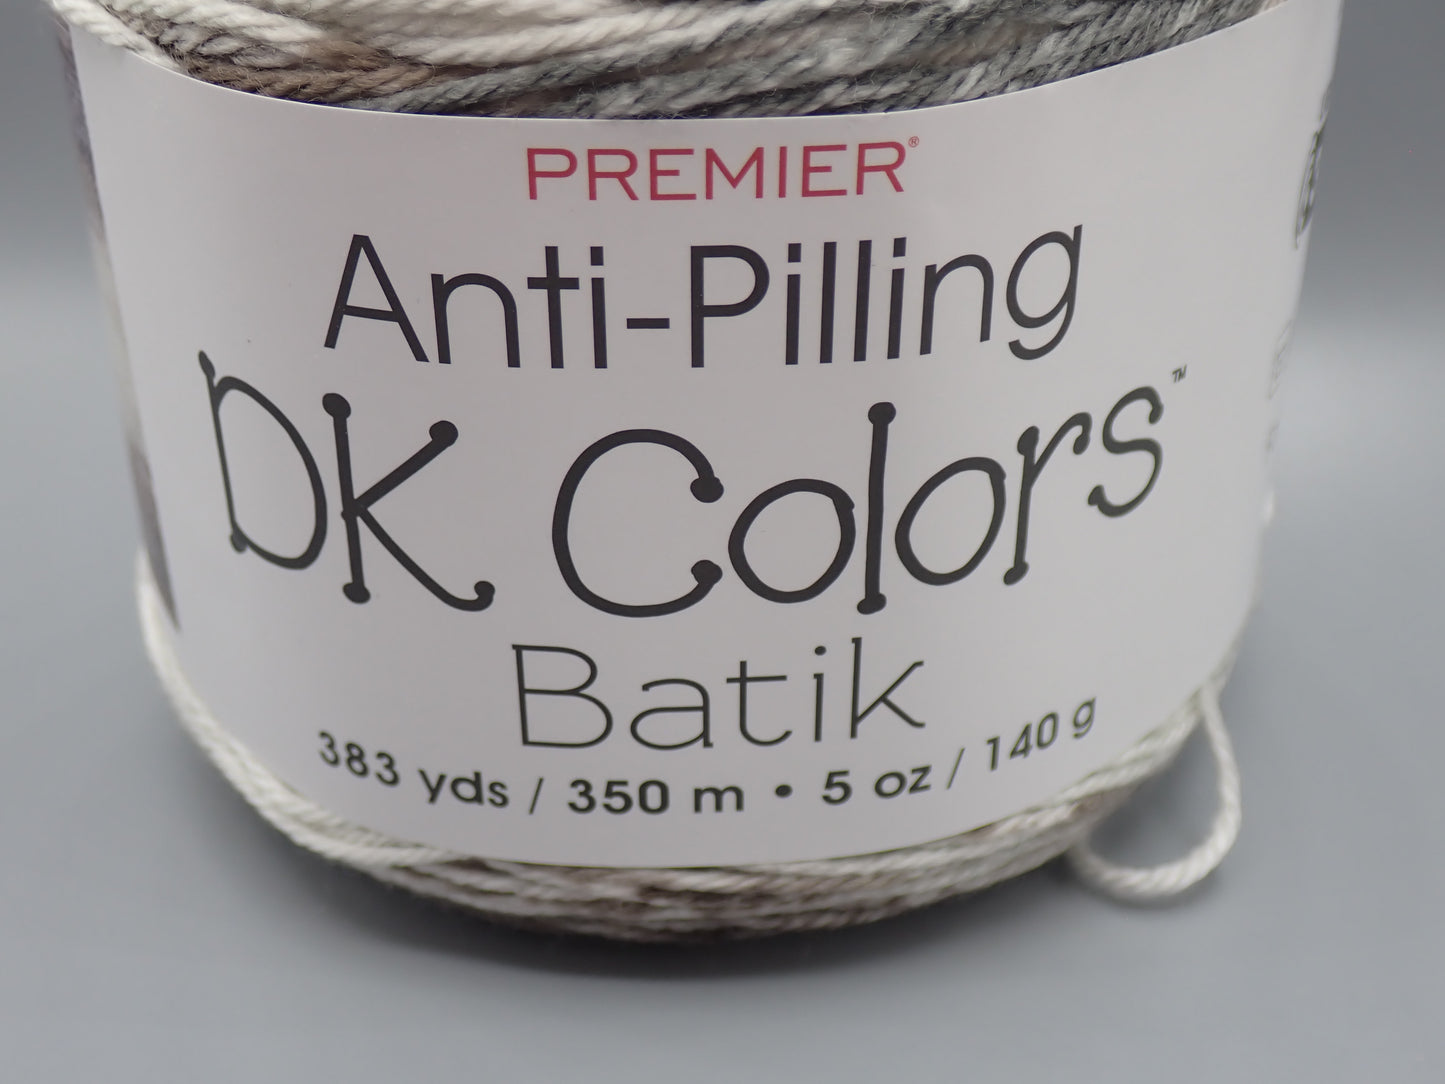 Premier Yarns Anti Pilling DK Colors Batik Cloudy Day